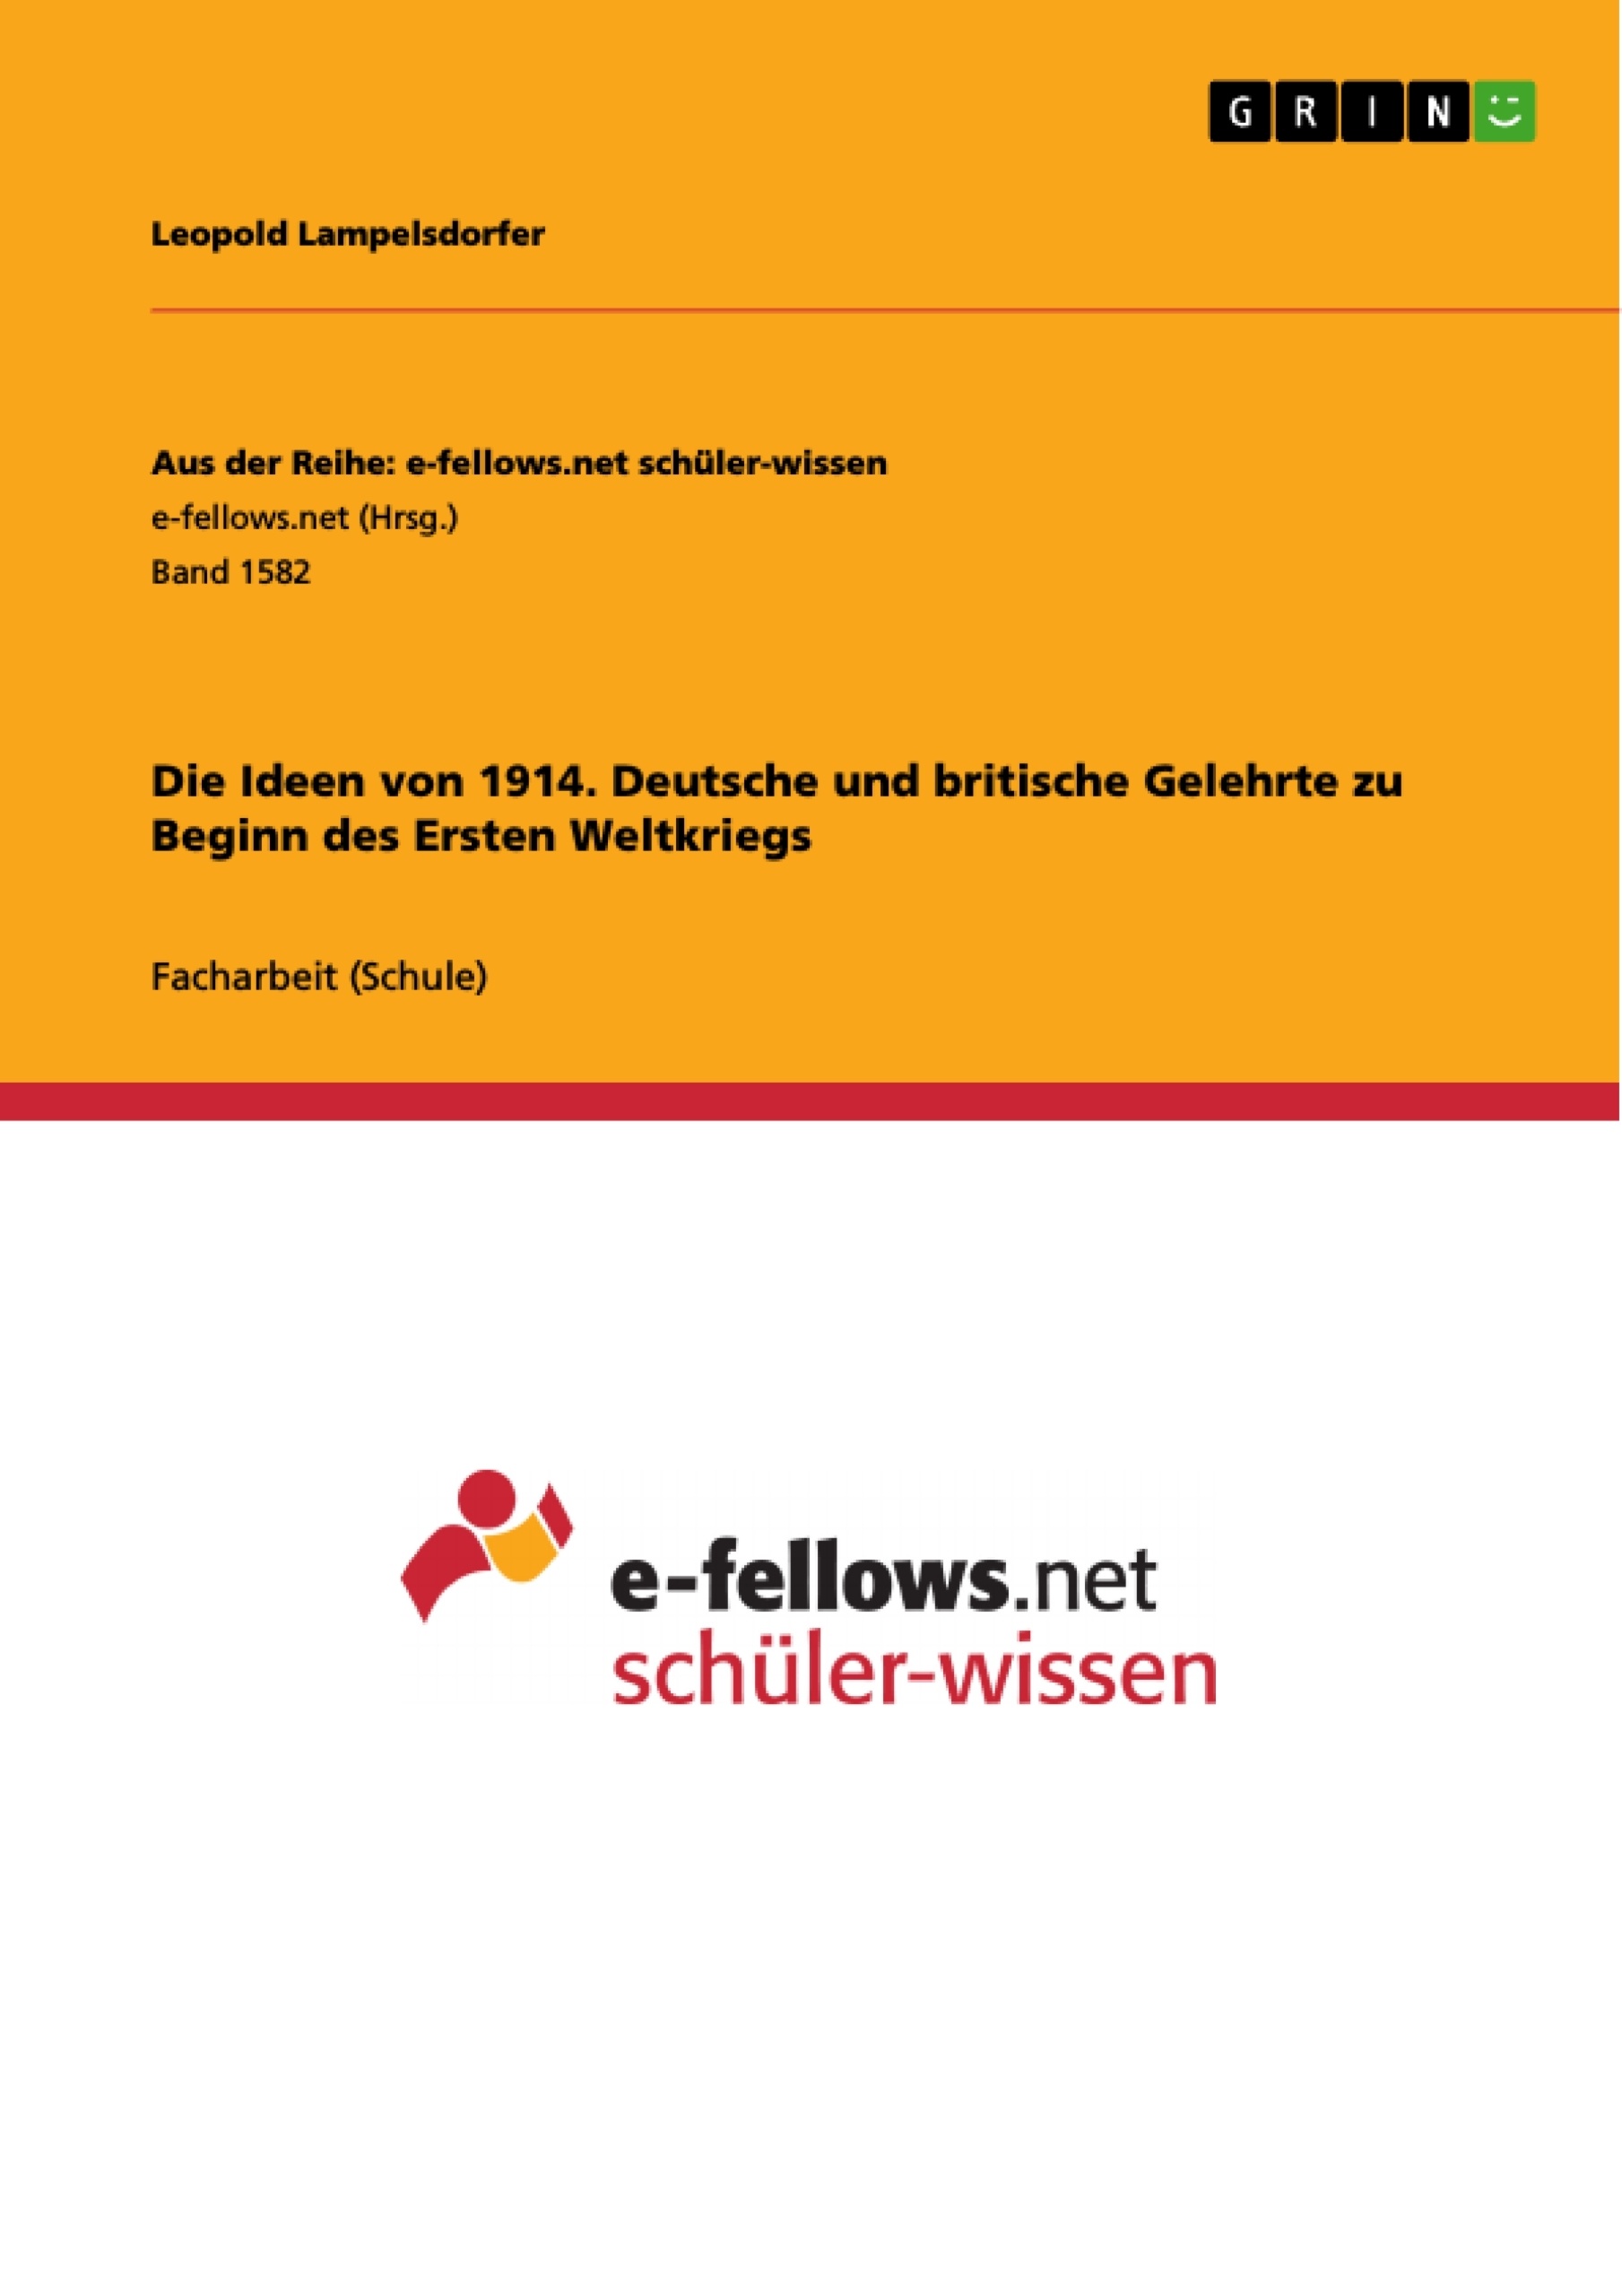 Title: Die Ideen von 1914. Deutsche und britische Gelehrte zu Beginn des Ersten Weltkriegs